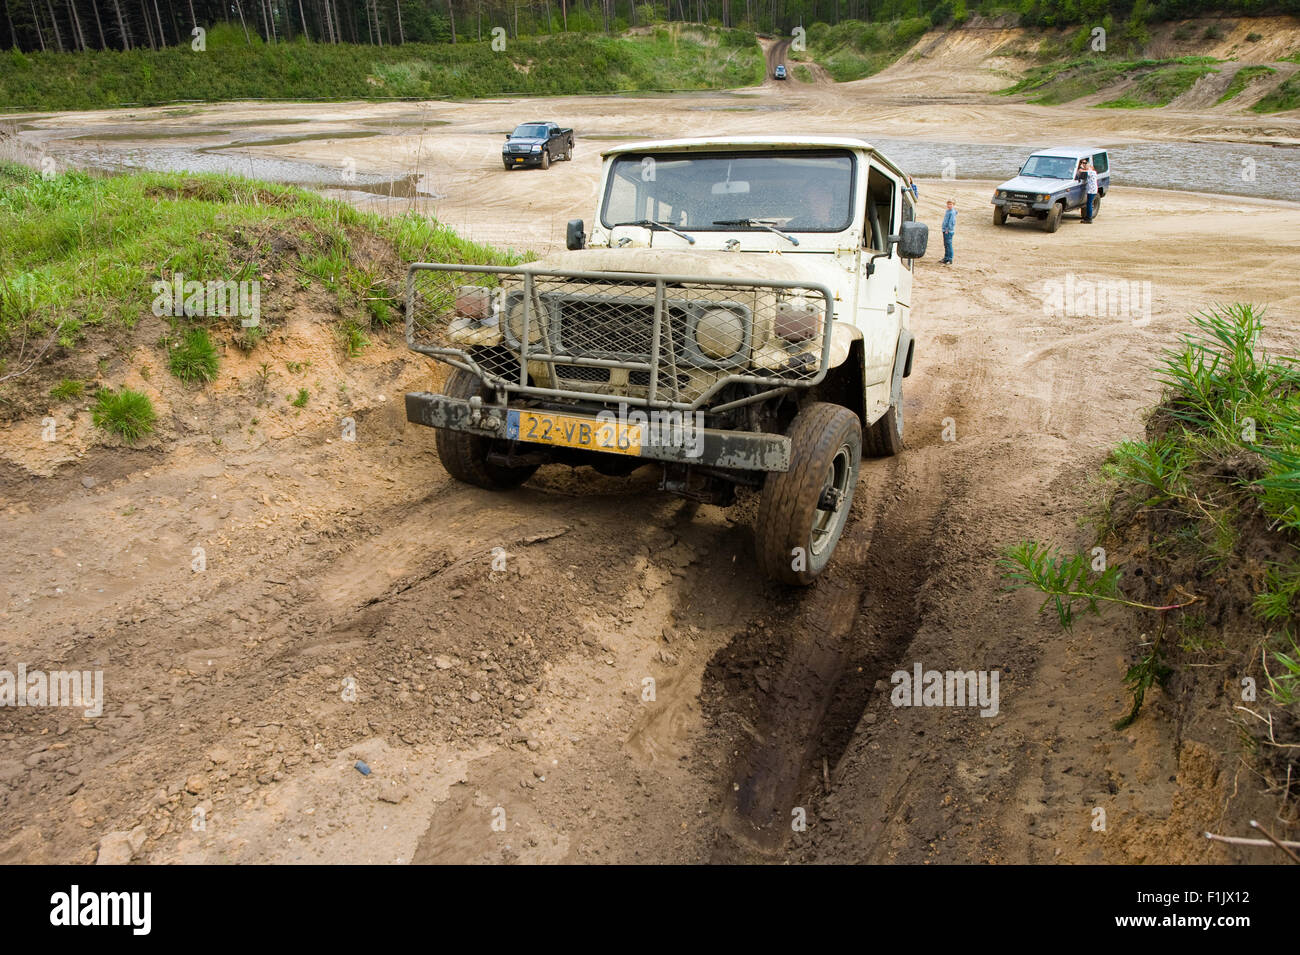 Une jeep est conduite sur un terrain hors de la route pour les land cruisers et les véhicules en Allemagne Banque D'Images